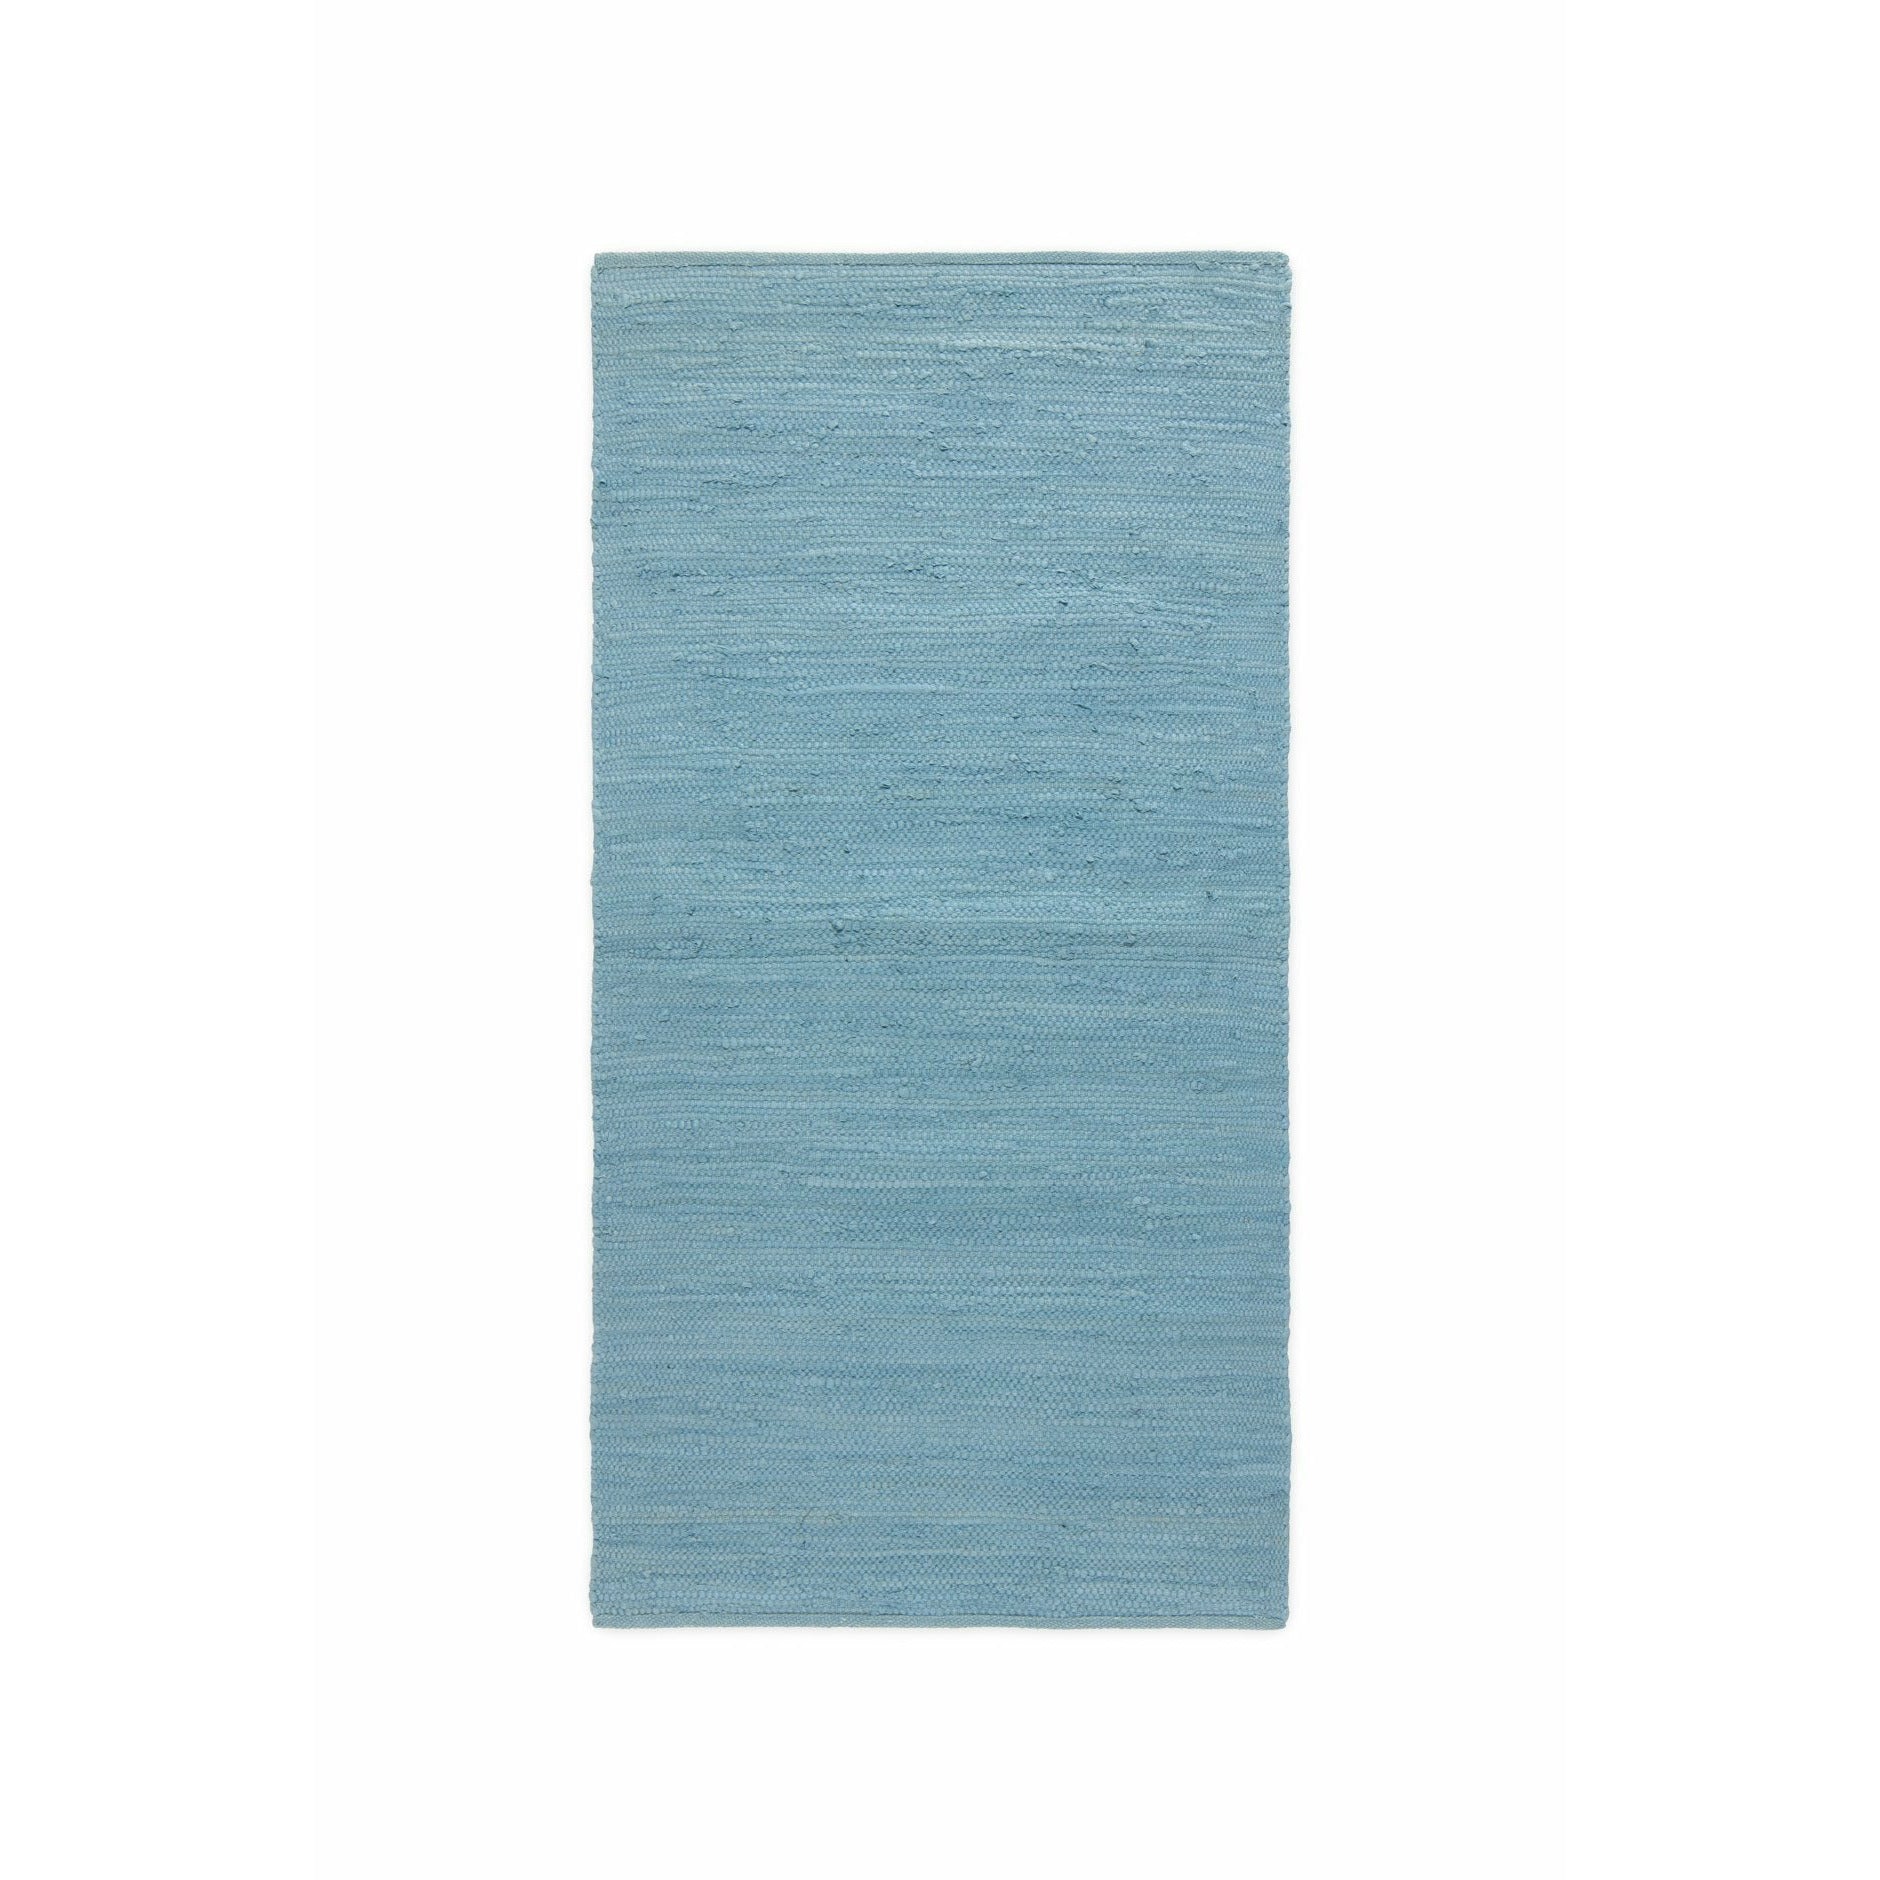 Rug Solid Bomullsmatta evigheten blå, 75 x 200 cm